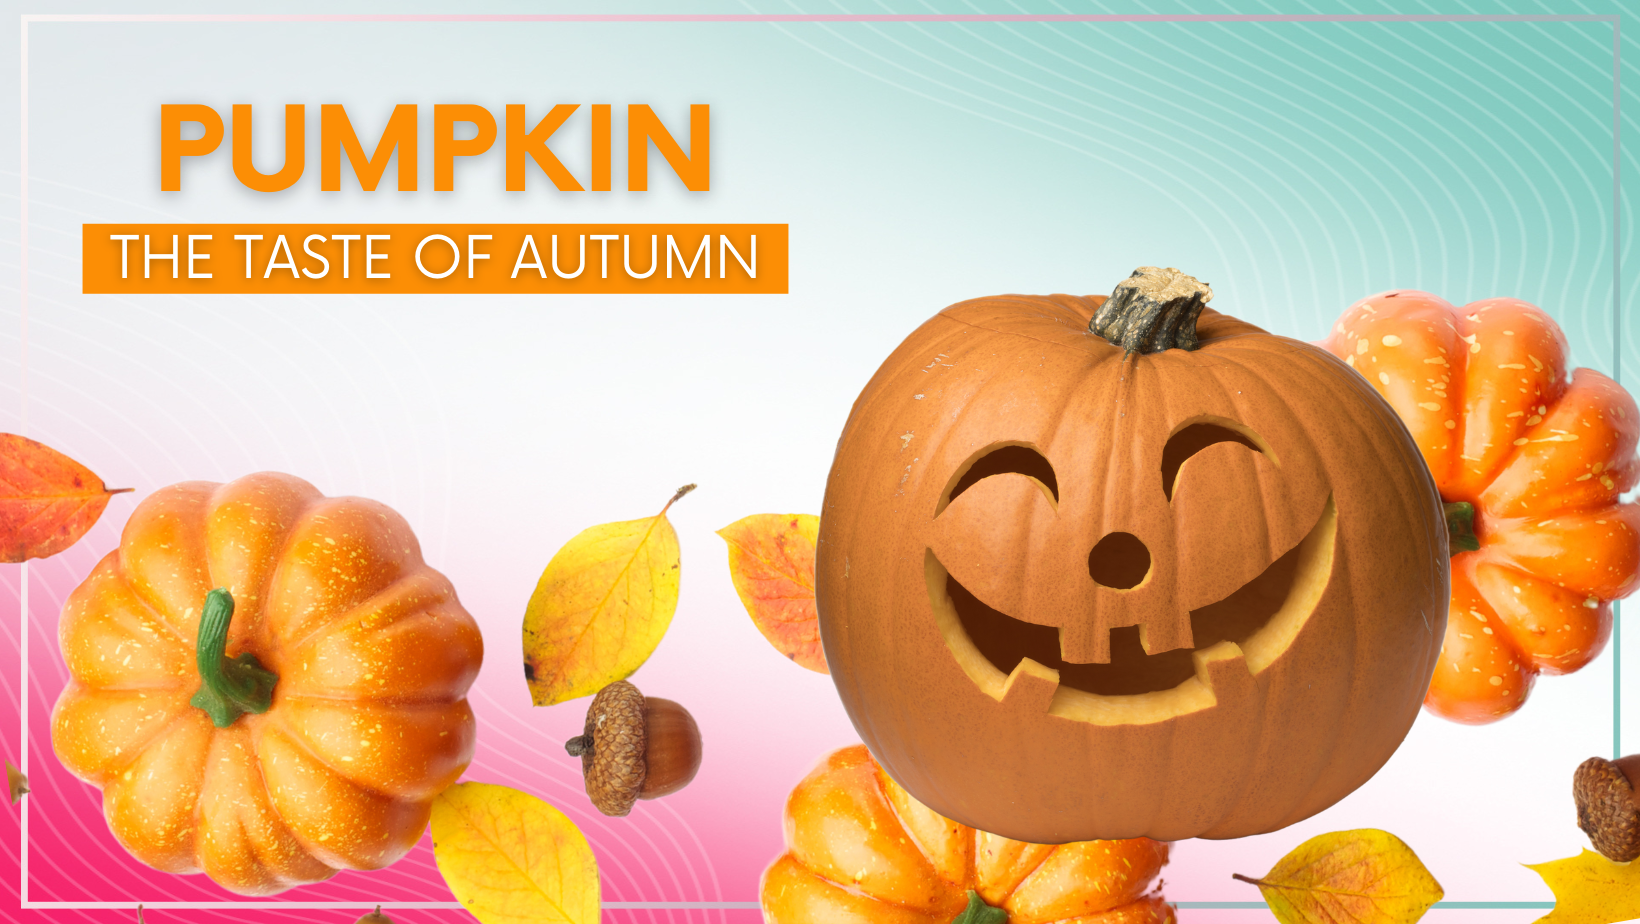 Pumpkin - the taste of autumn!